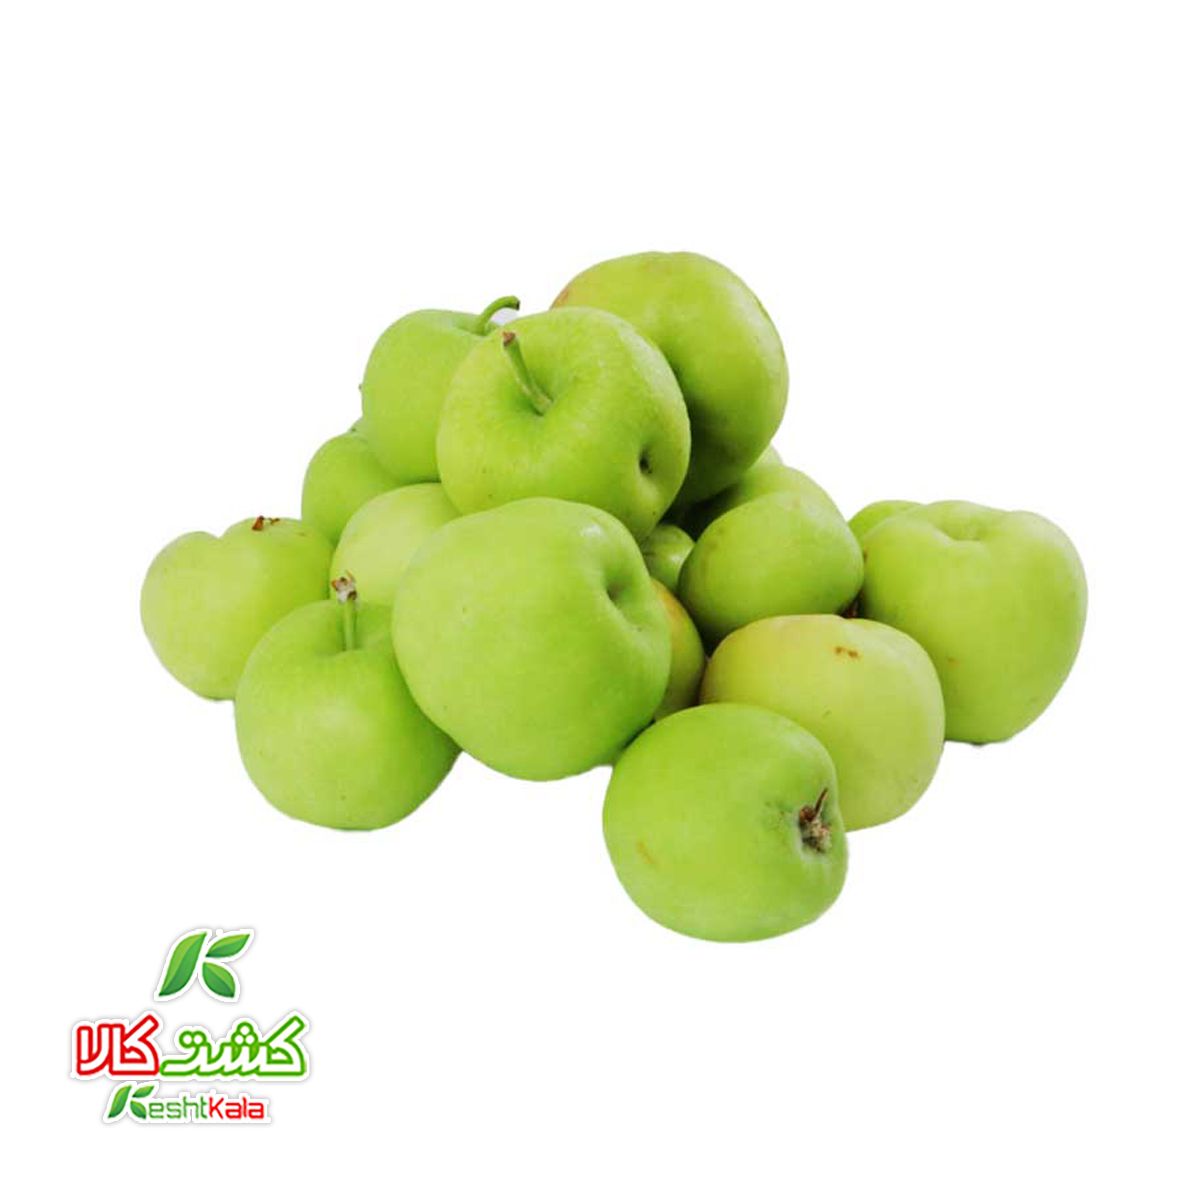 سیب سبز آبگیری کشت کالا کیسه ای 3 کیلوگرمی